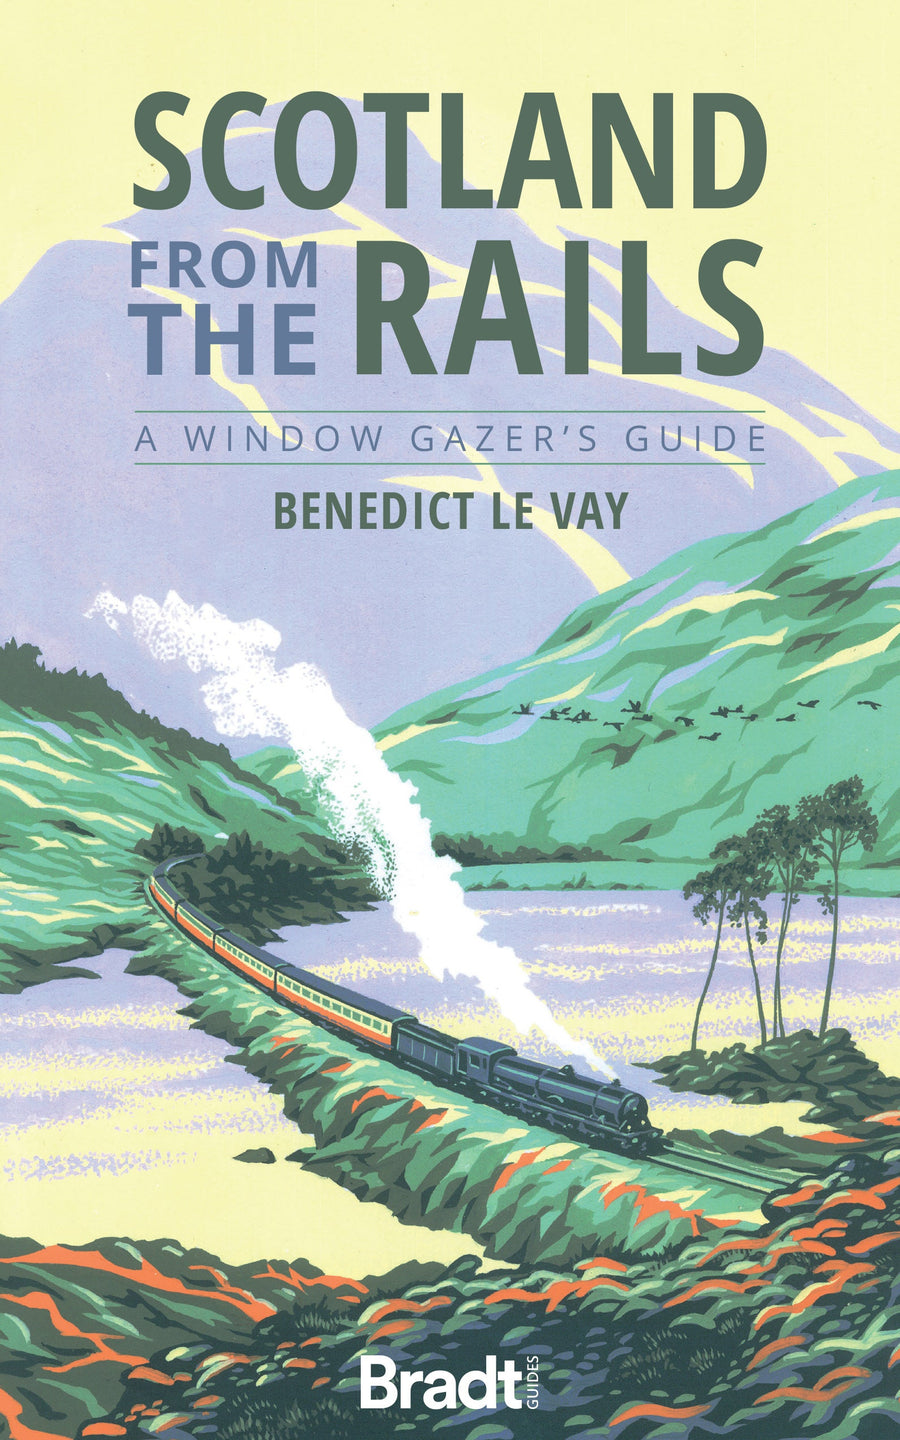 Guide de voyage (en anglais) - Scotland from the rails | Bradt guide de voyage Bradt 